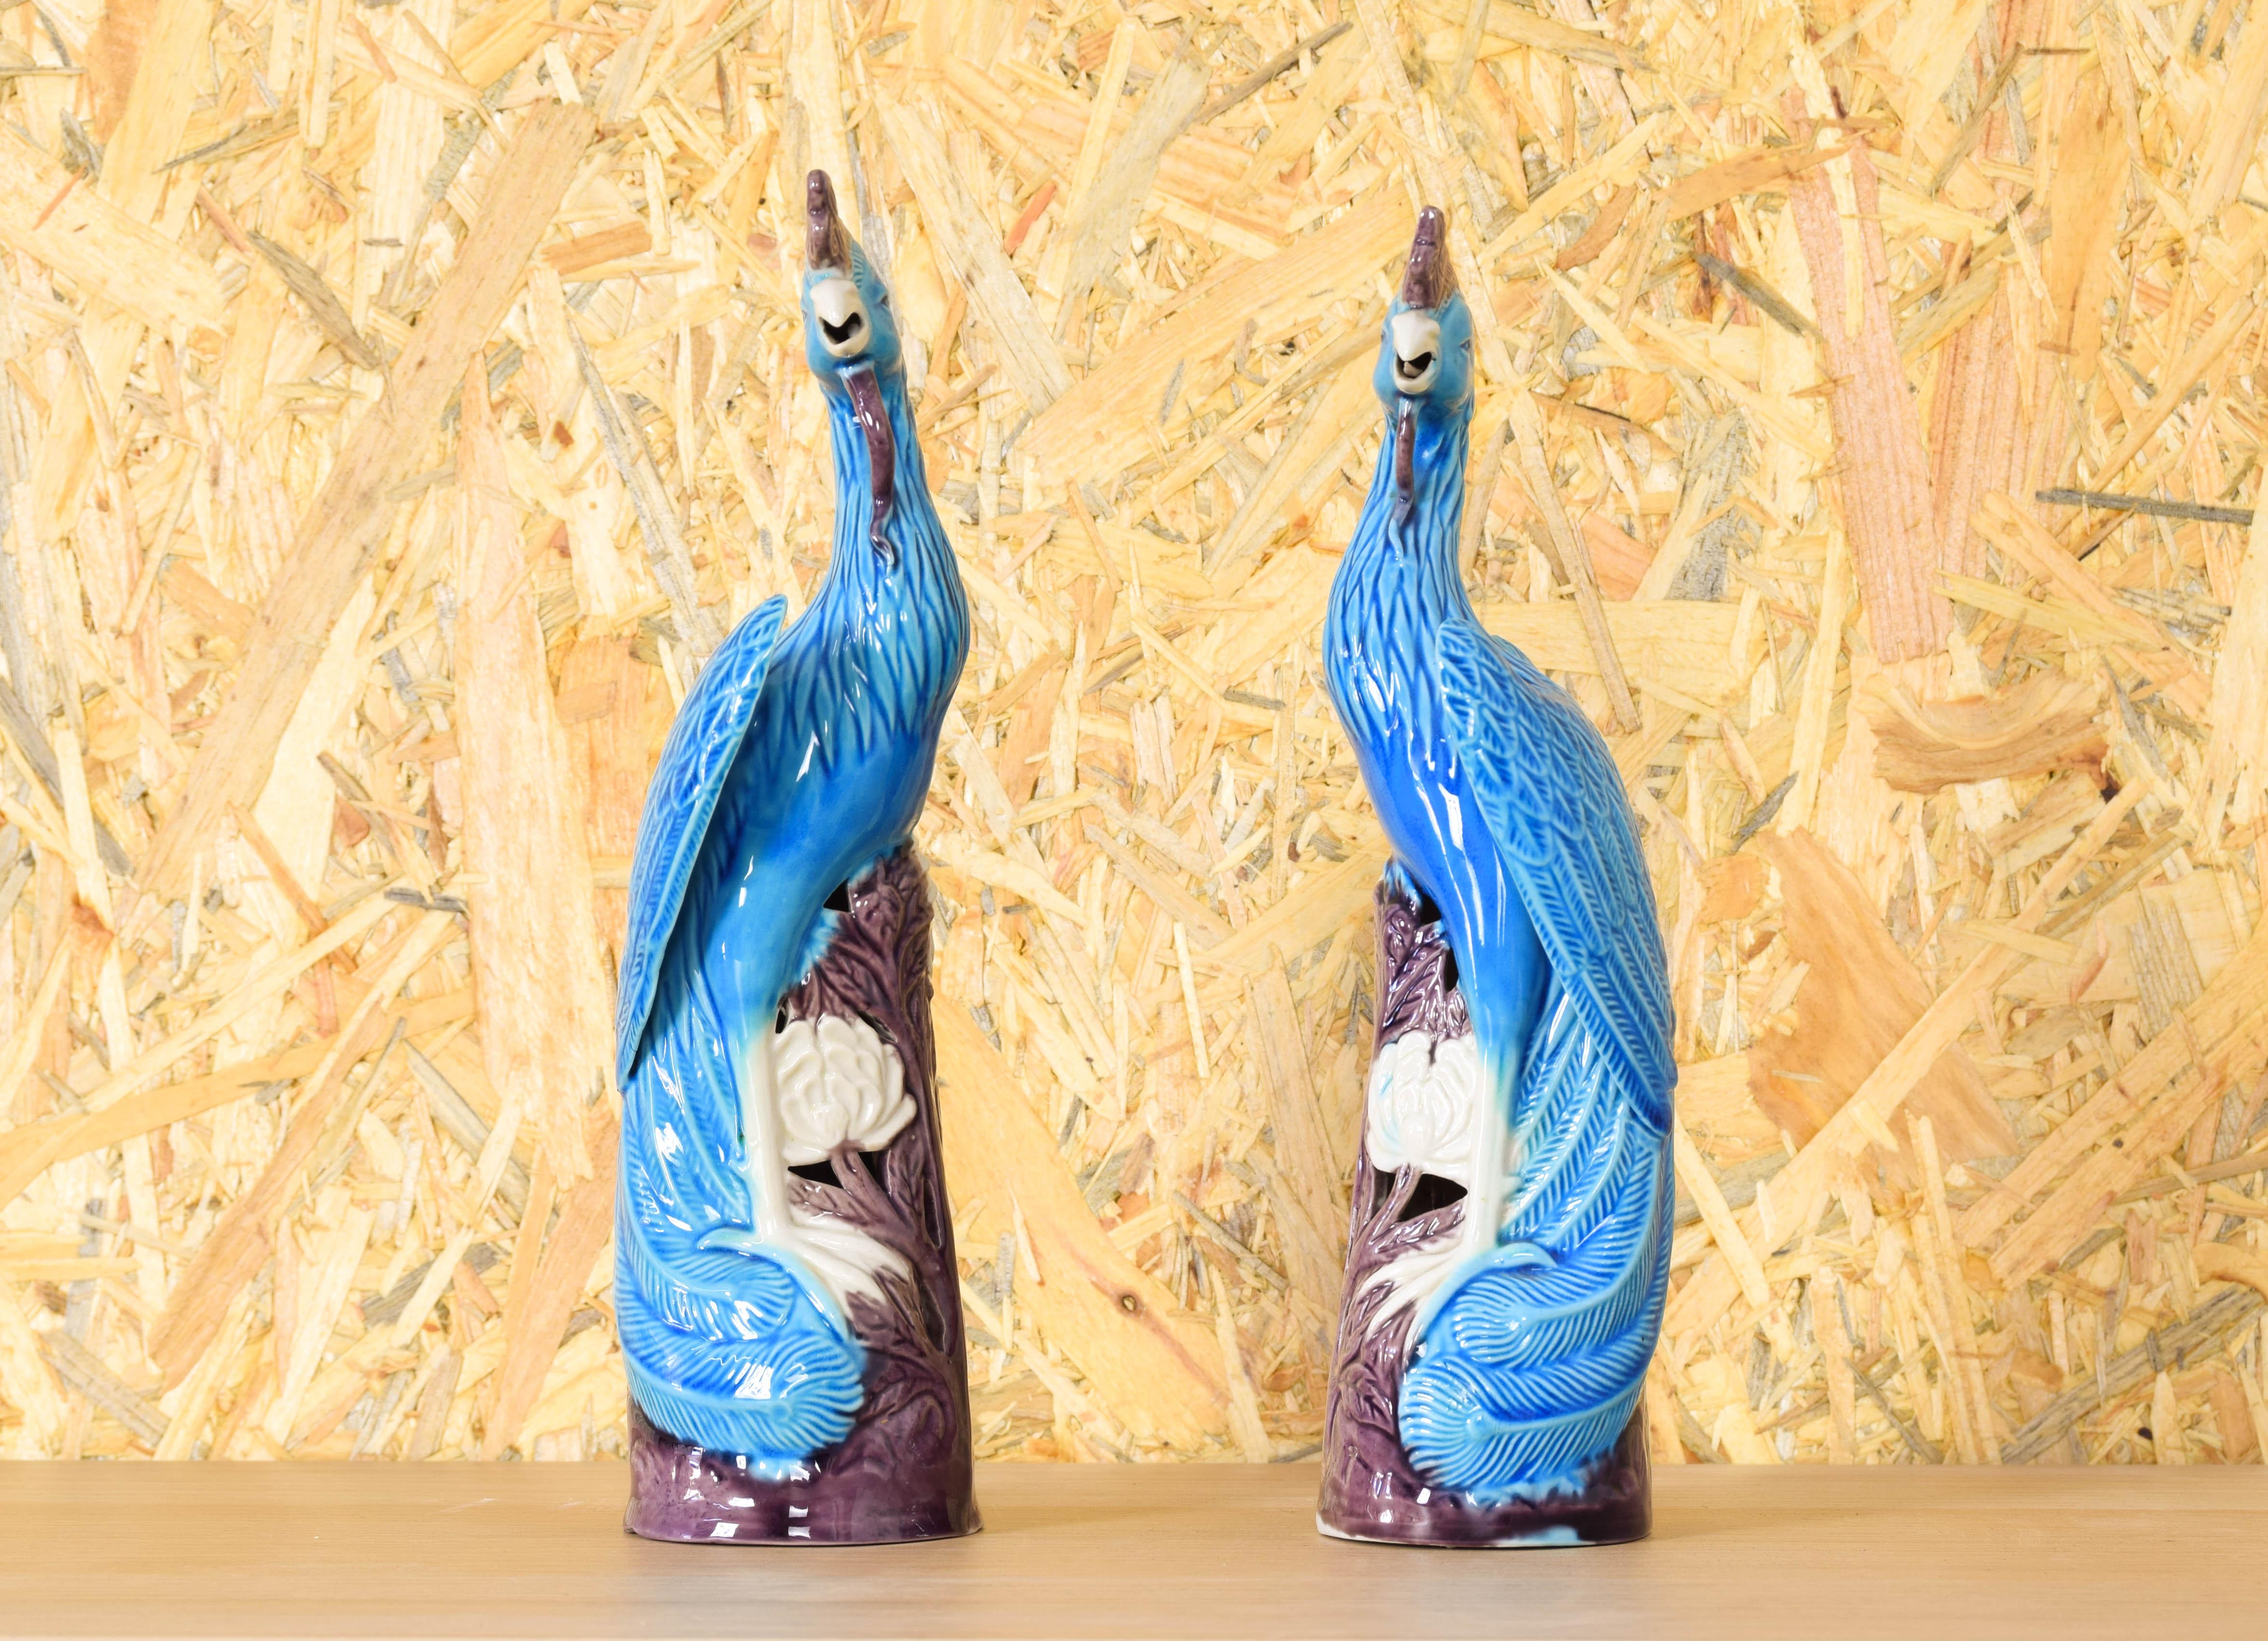 Magnifique paire de pièces en porcelaine chinoise turquoise.
Cette paire de paons est en excellent état.
Des figures élancées, décoratives et belles.

Mesures :
Hauteur 20 cm
Diamètre 7,5 cm.